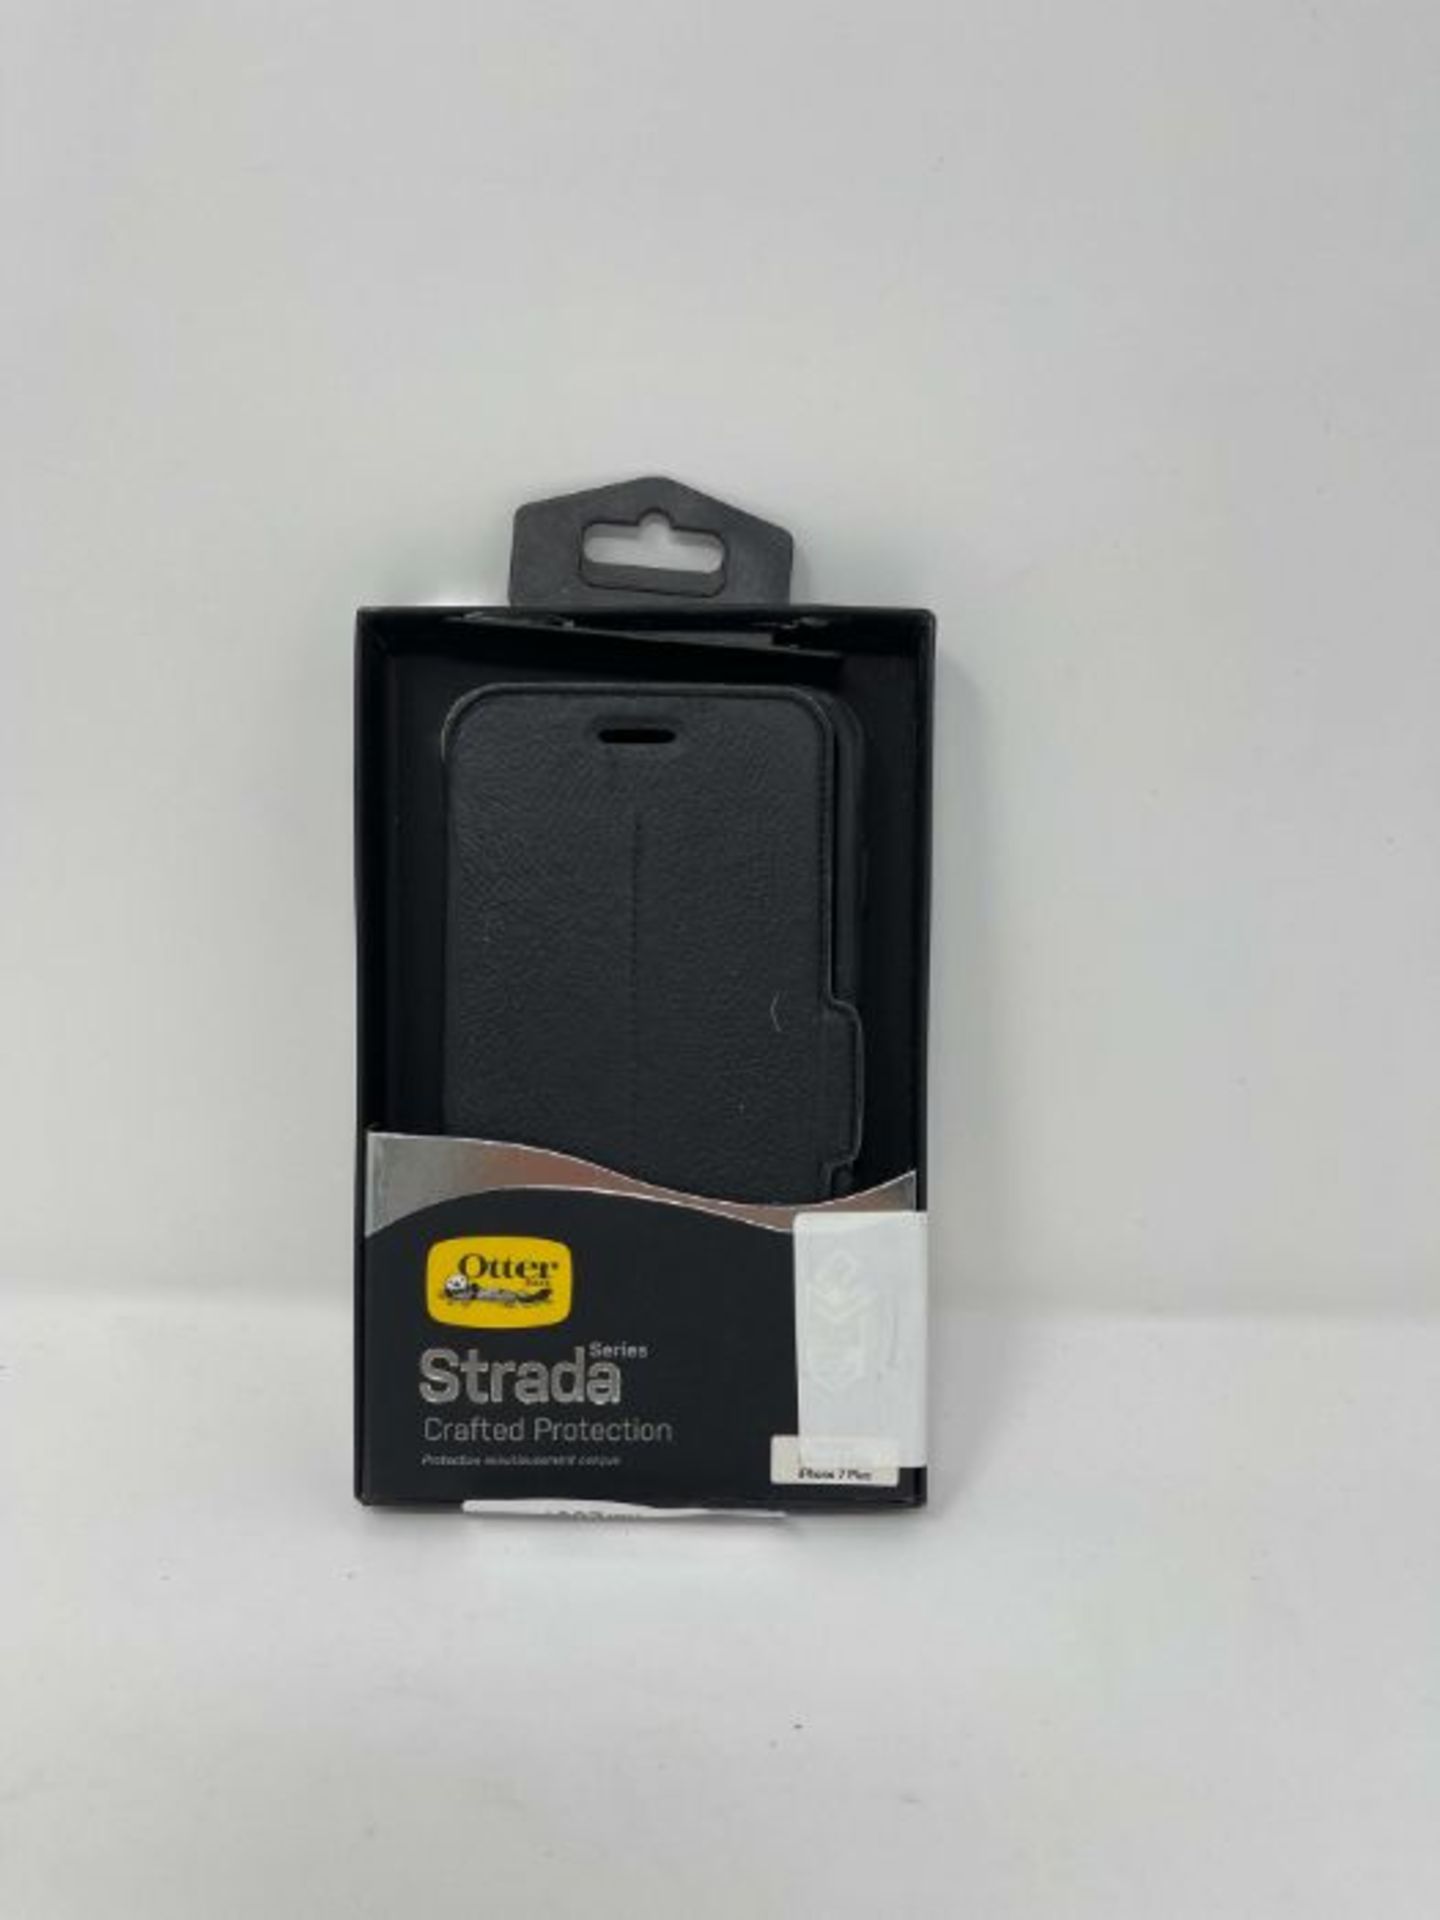 OtterBox Strada Series Premium Leather Folio Case for iPhone 7 Plus/8 Plus - Black - Image 2 of 3